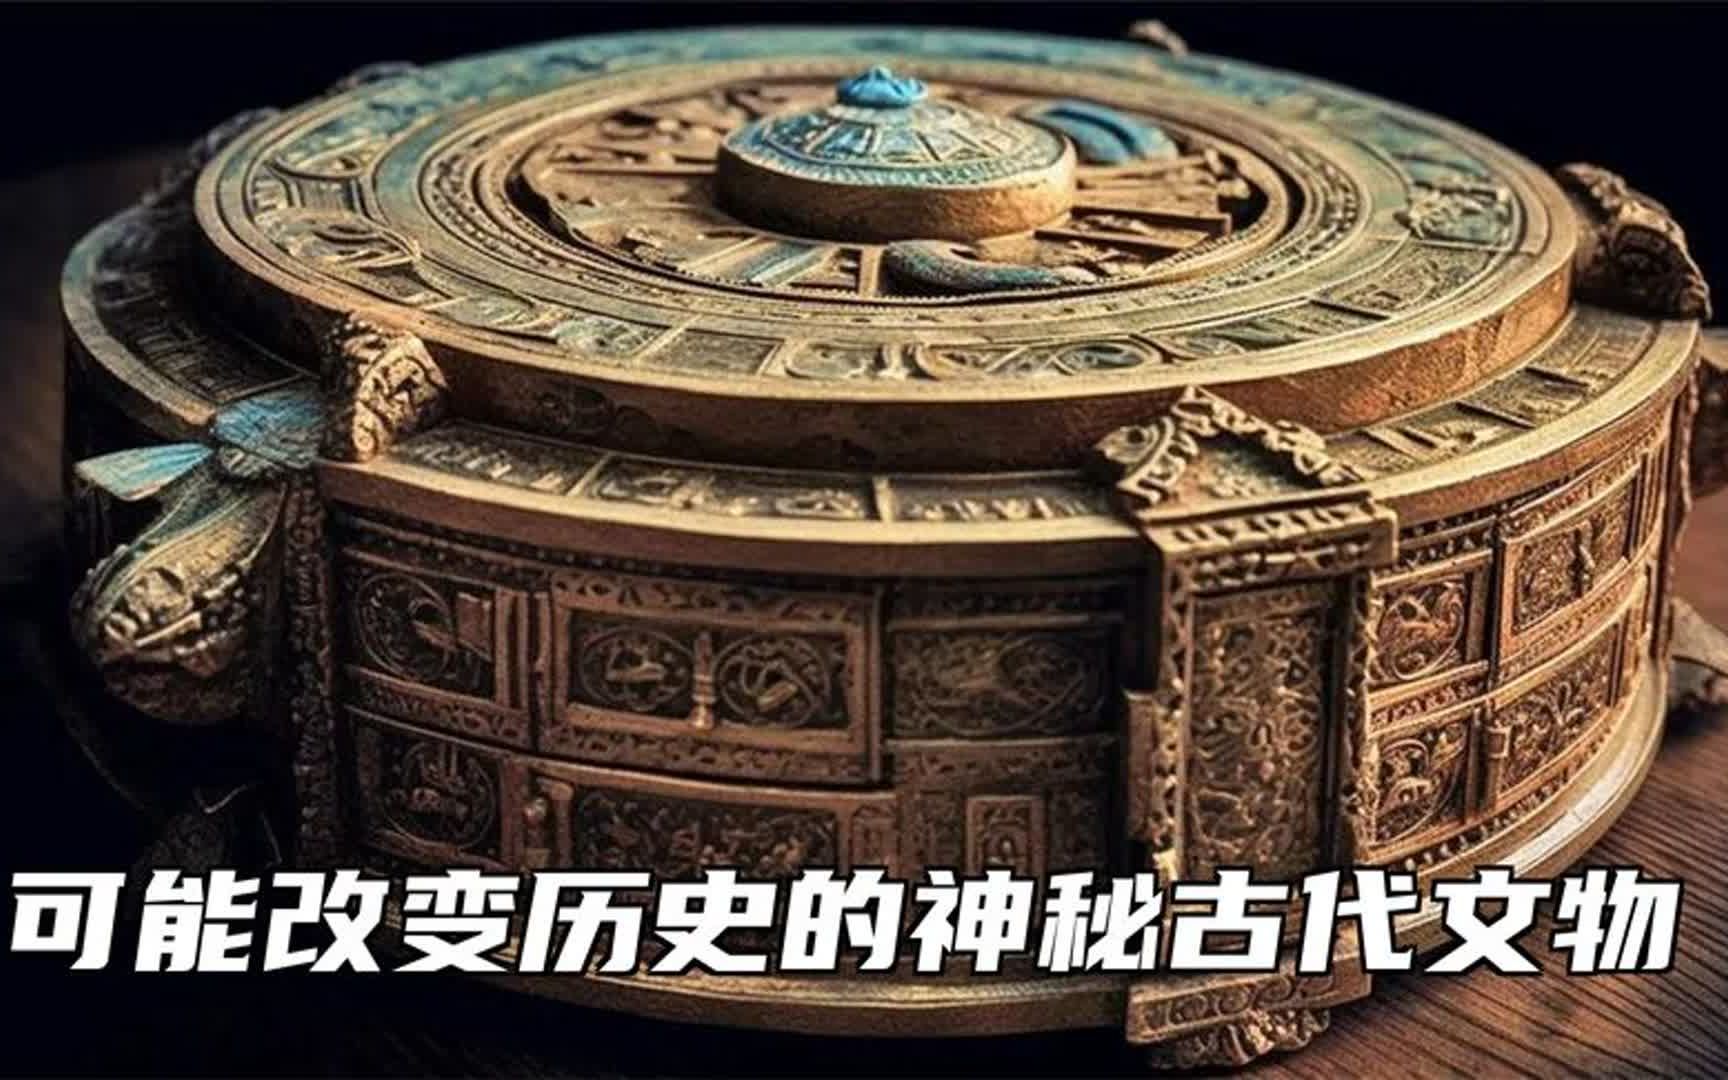 中国撼动哥伦布发现美洲地图、古代朝鲜水钟等改变历史的古代文物